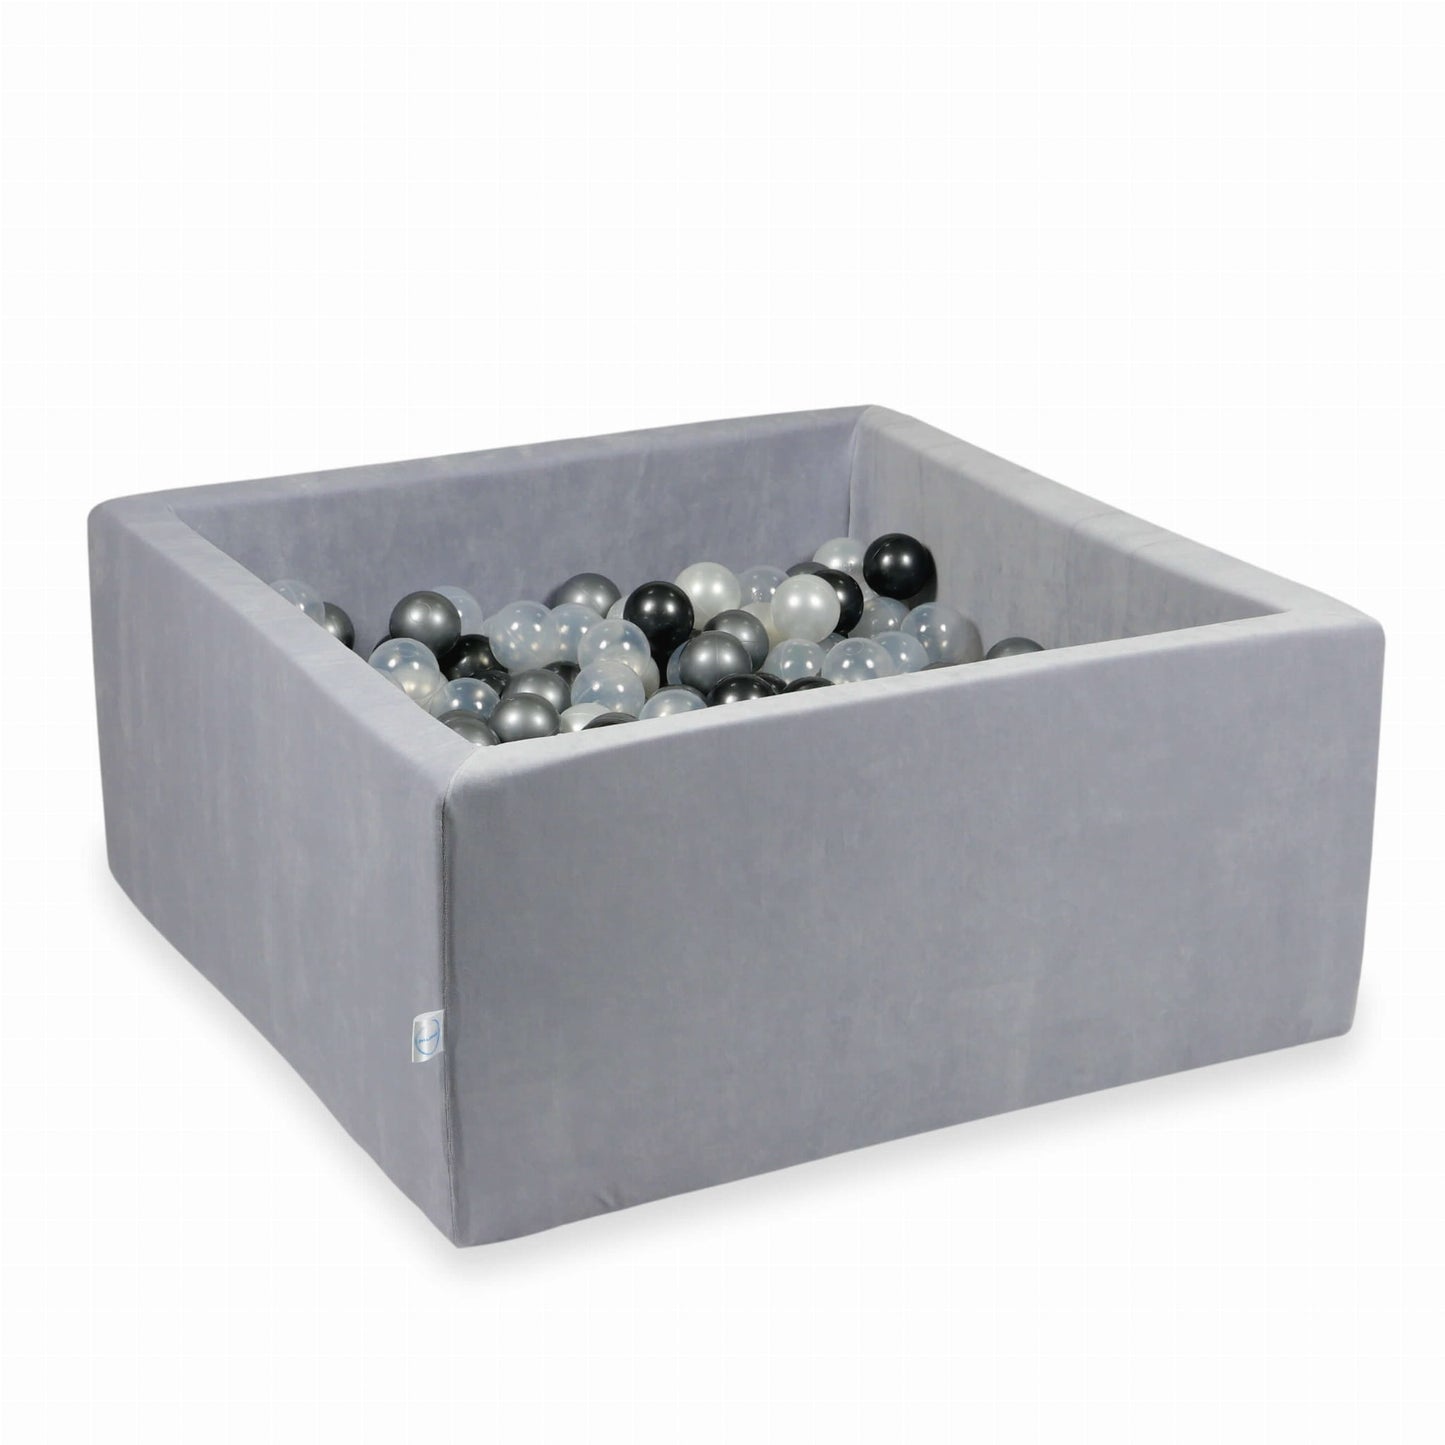 Piscine à Balles 90x90x40 Velvet Soft gris clair avec balles 400 pcs  (perle, transparent, graphite métallique, argent)